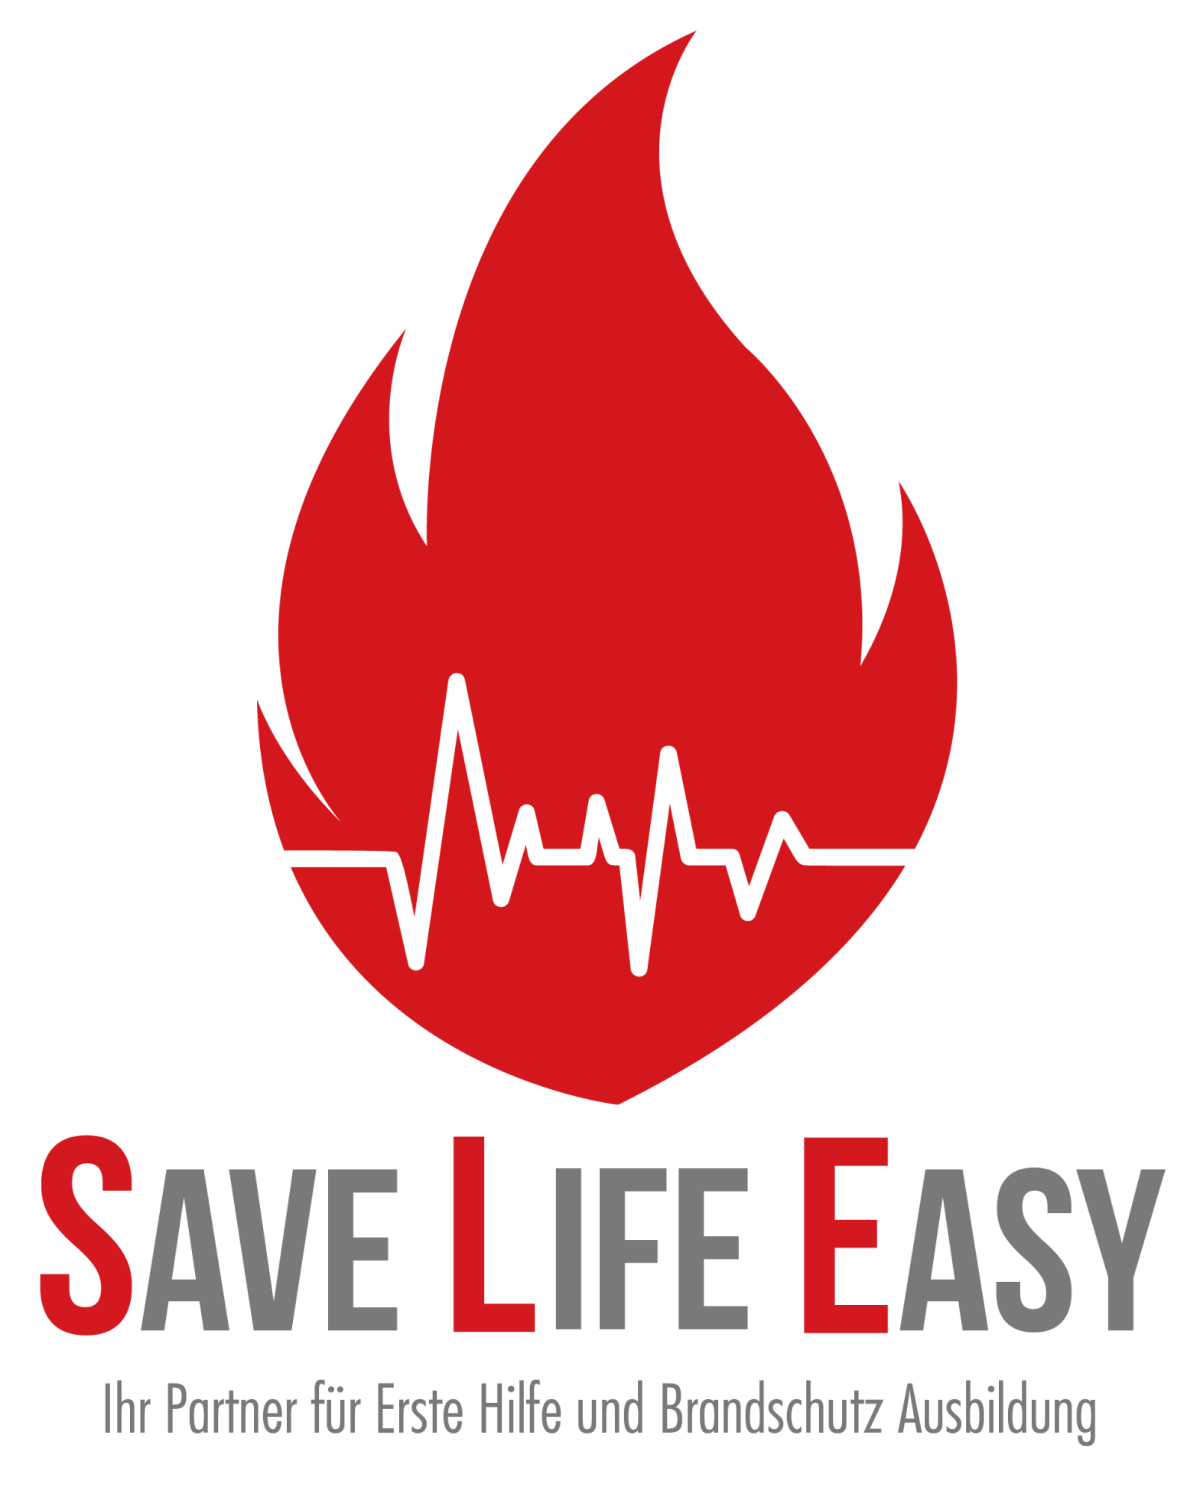 (c) Save-life-easy.com